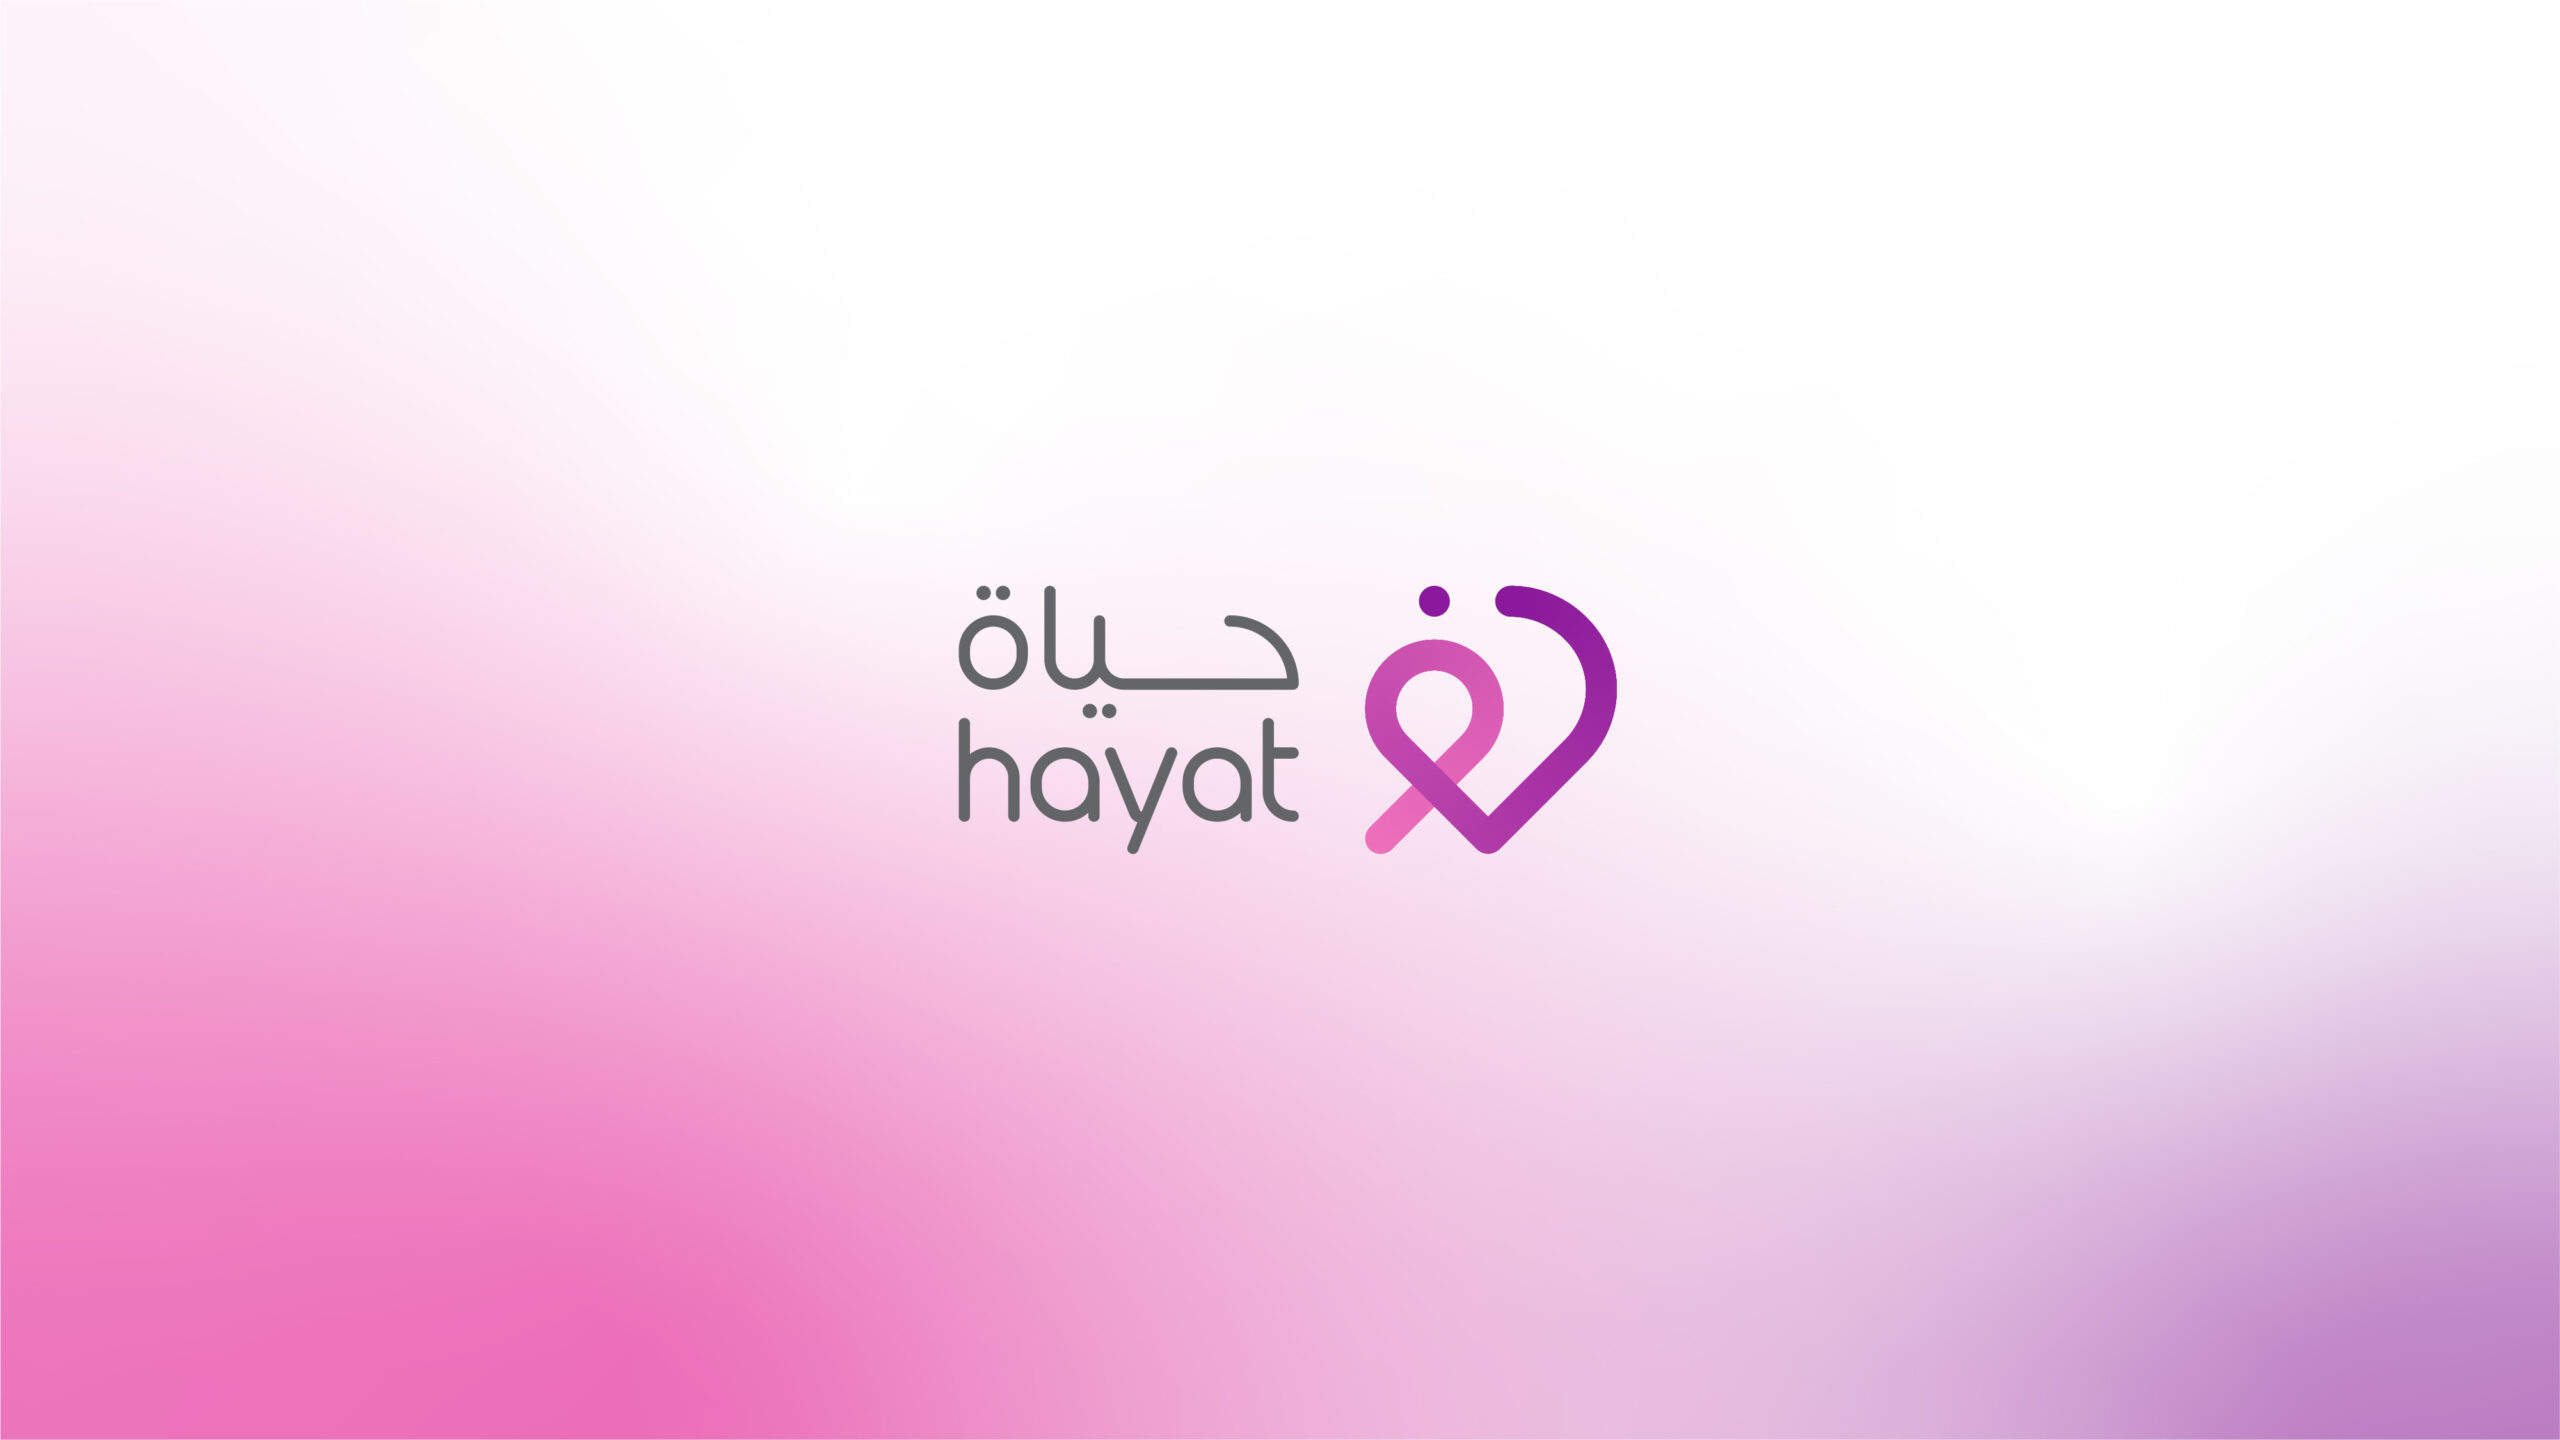 Hayat-App-Branding-By-Millimeter-Creative-Agency-07